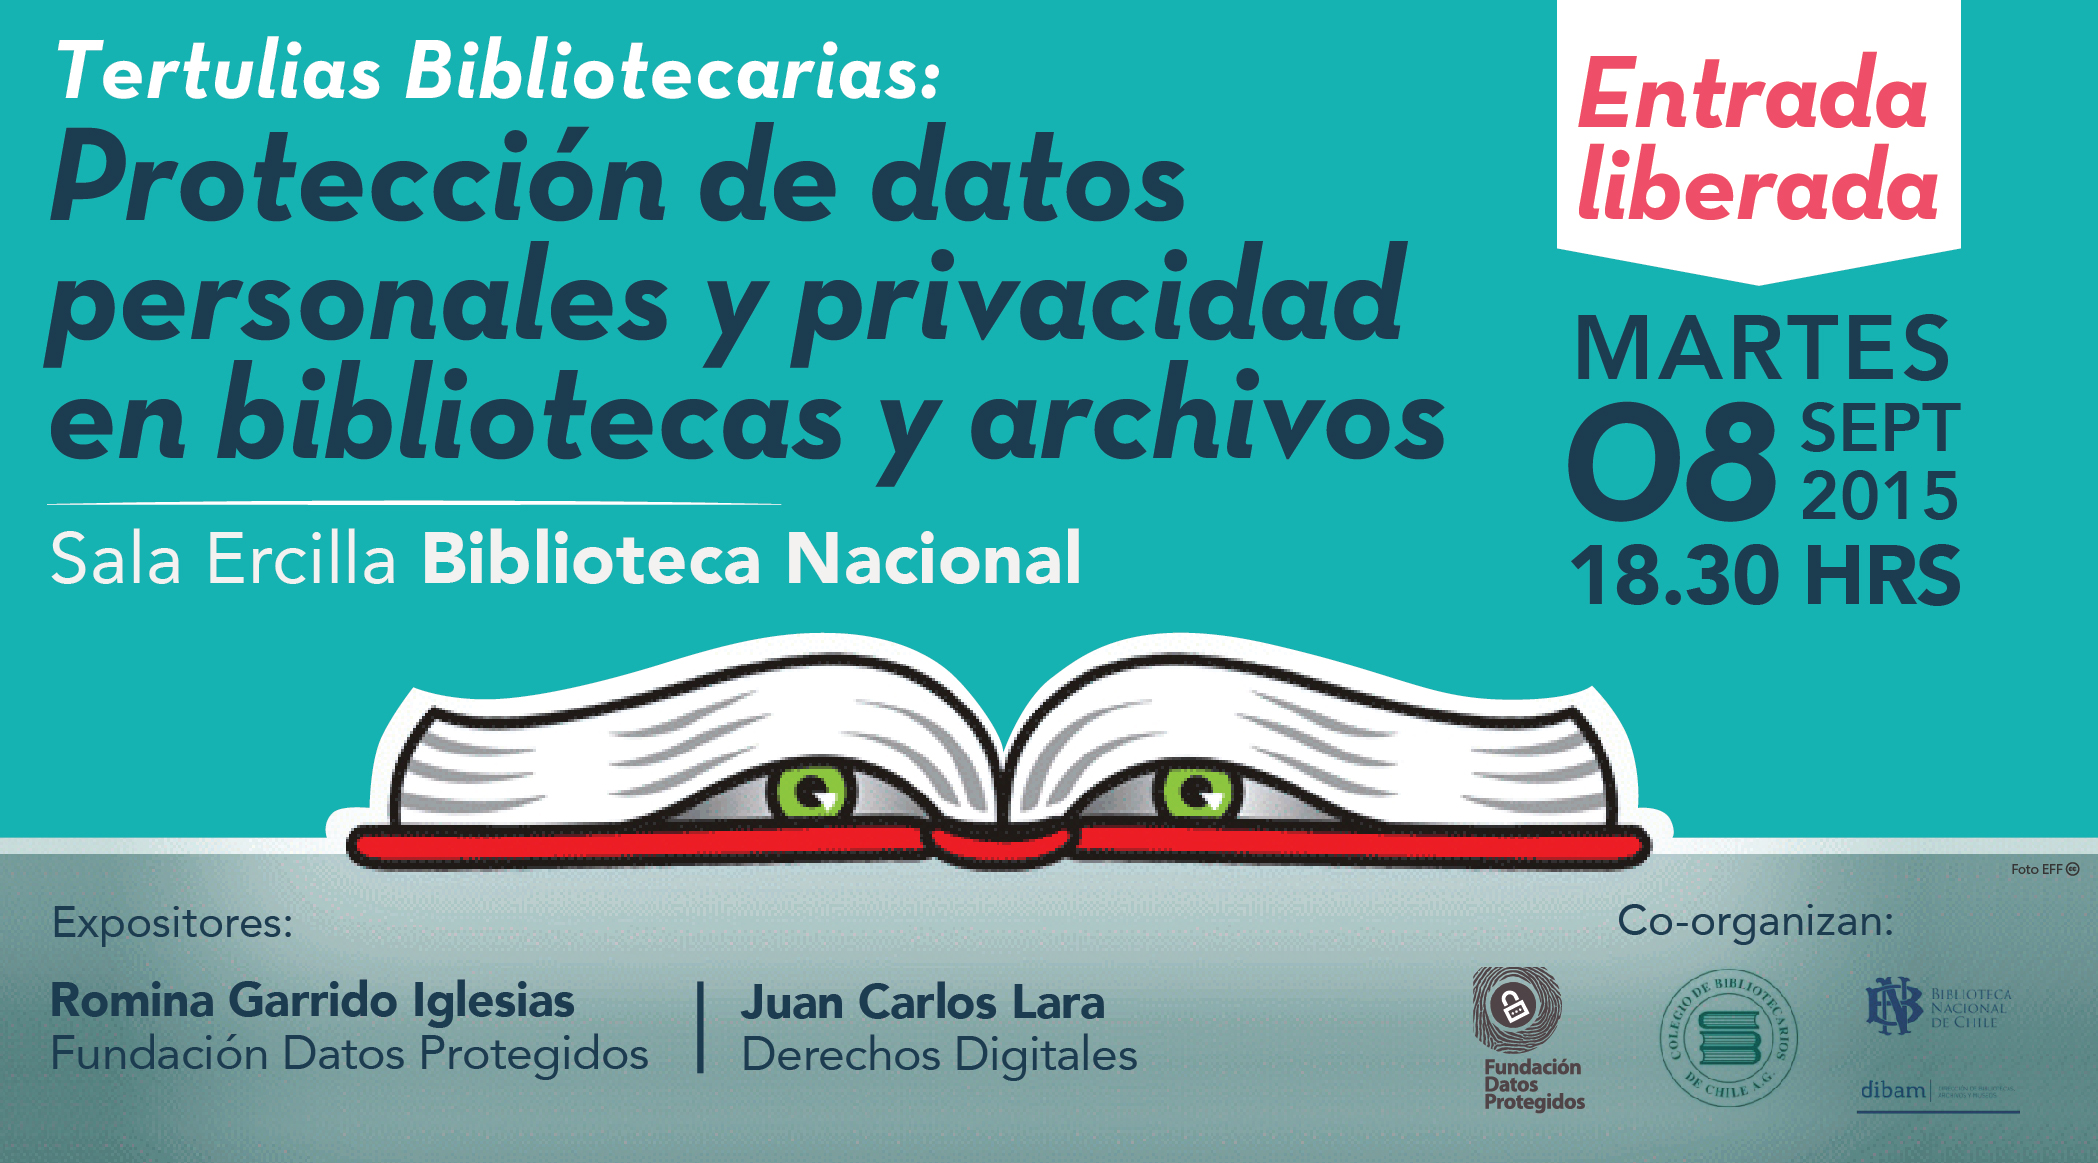 Tertulias Bibliotecarias: “Protección de datos personales y privacidad en bibliotecas y archivos”